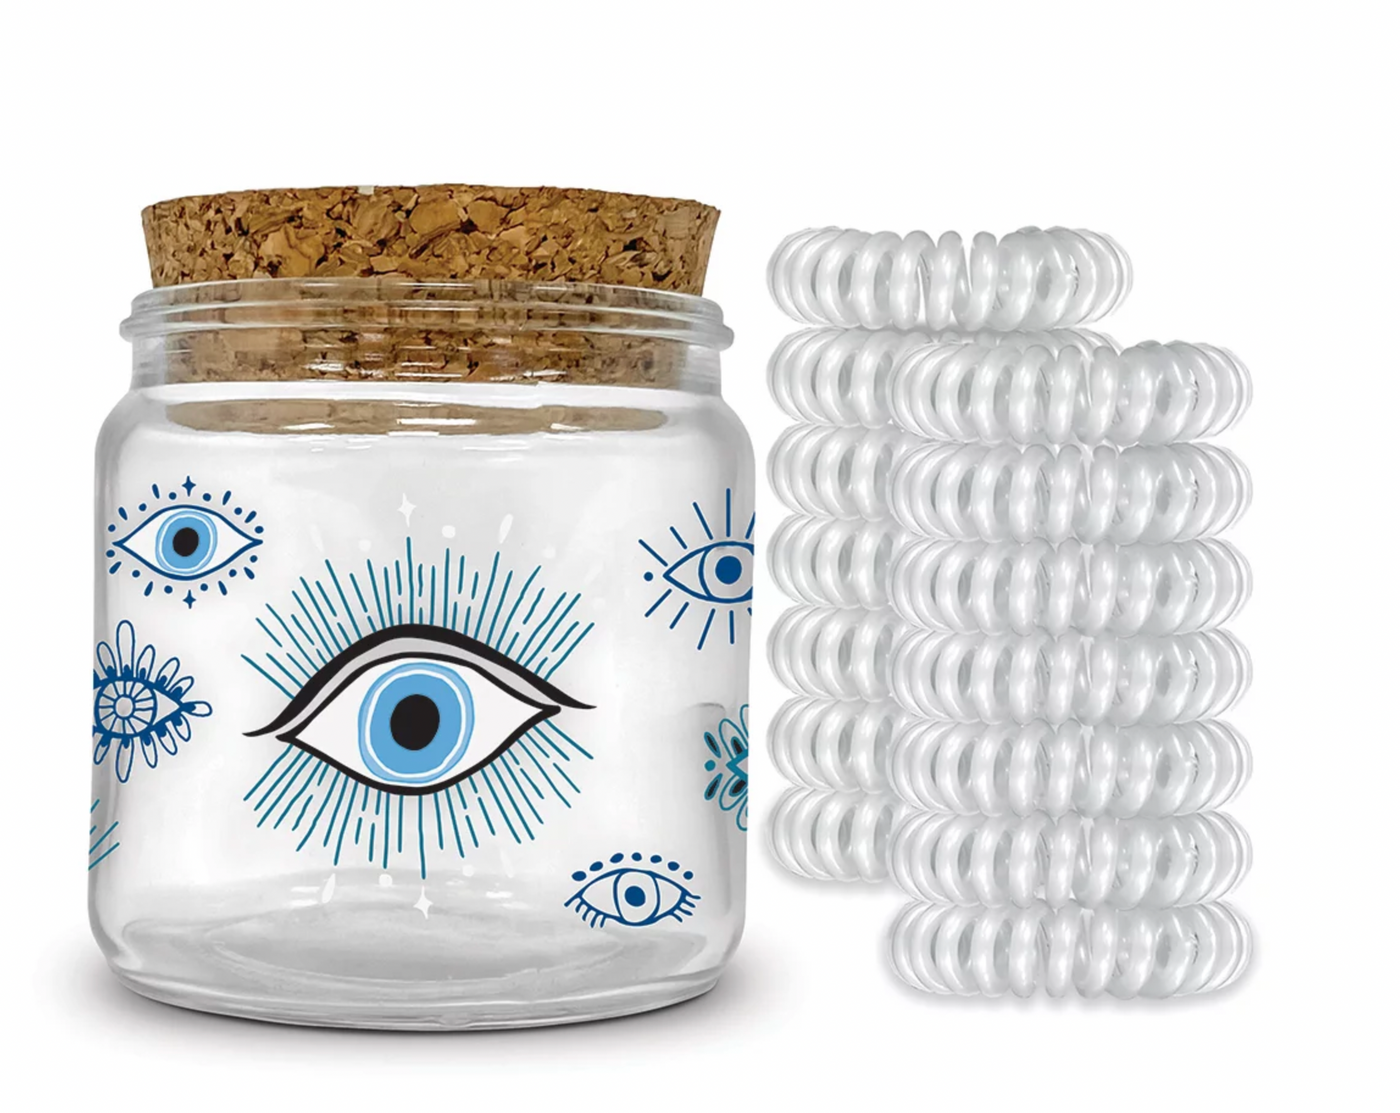 Spiral Hair Ties in Decorative Jars - Evil Eye